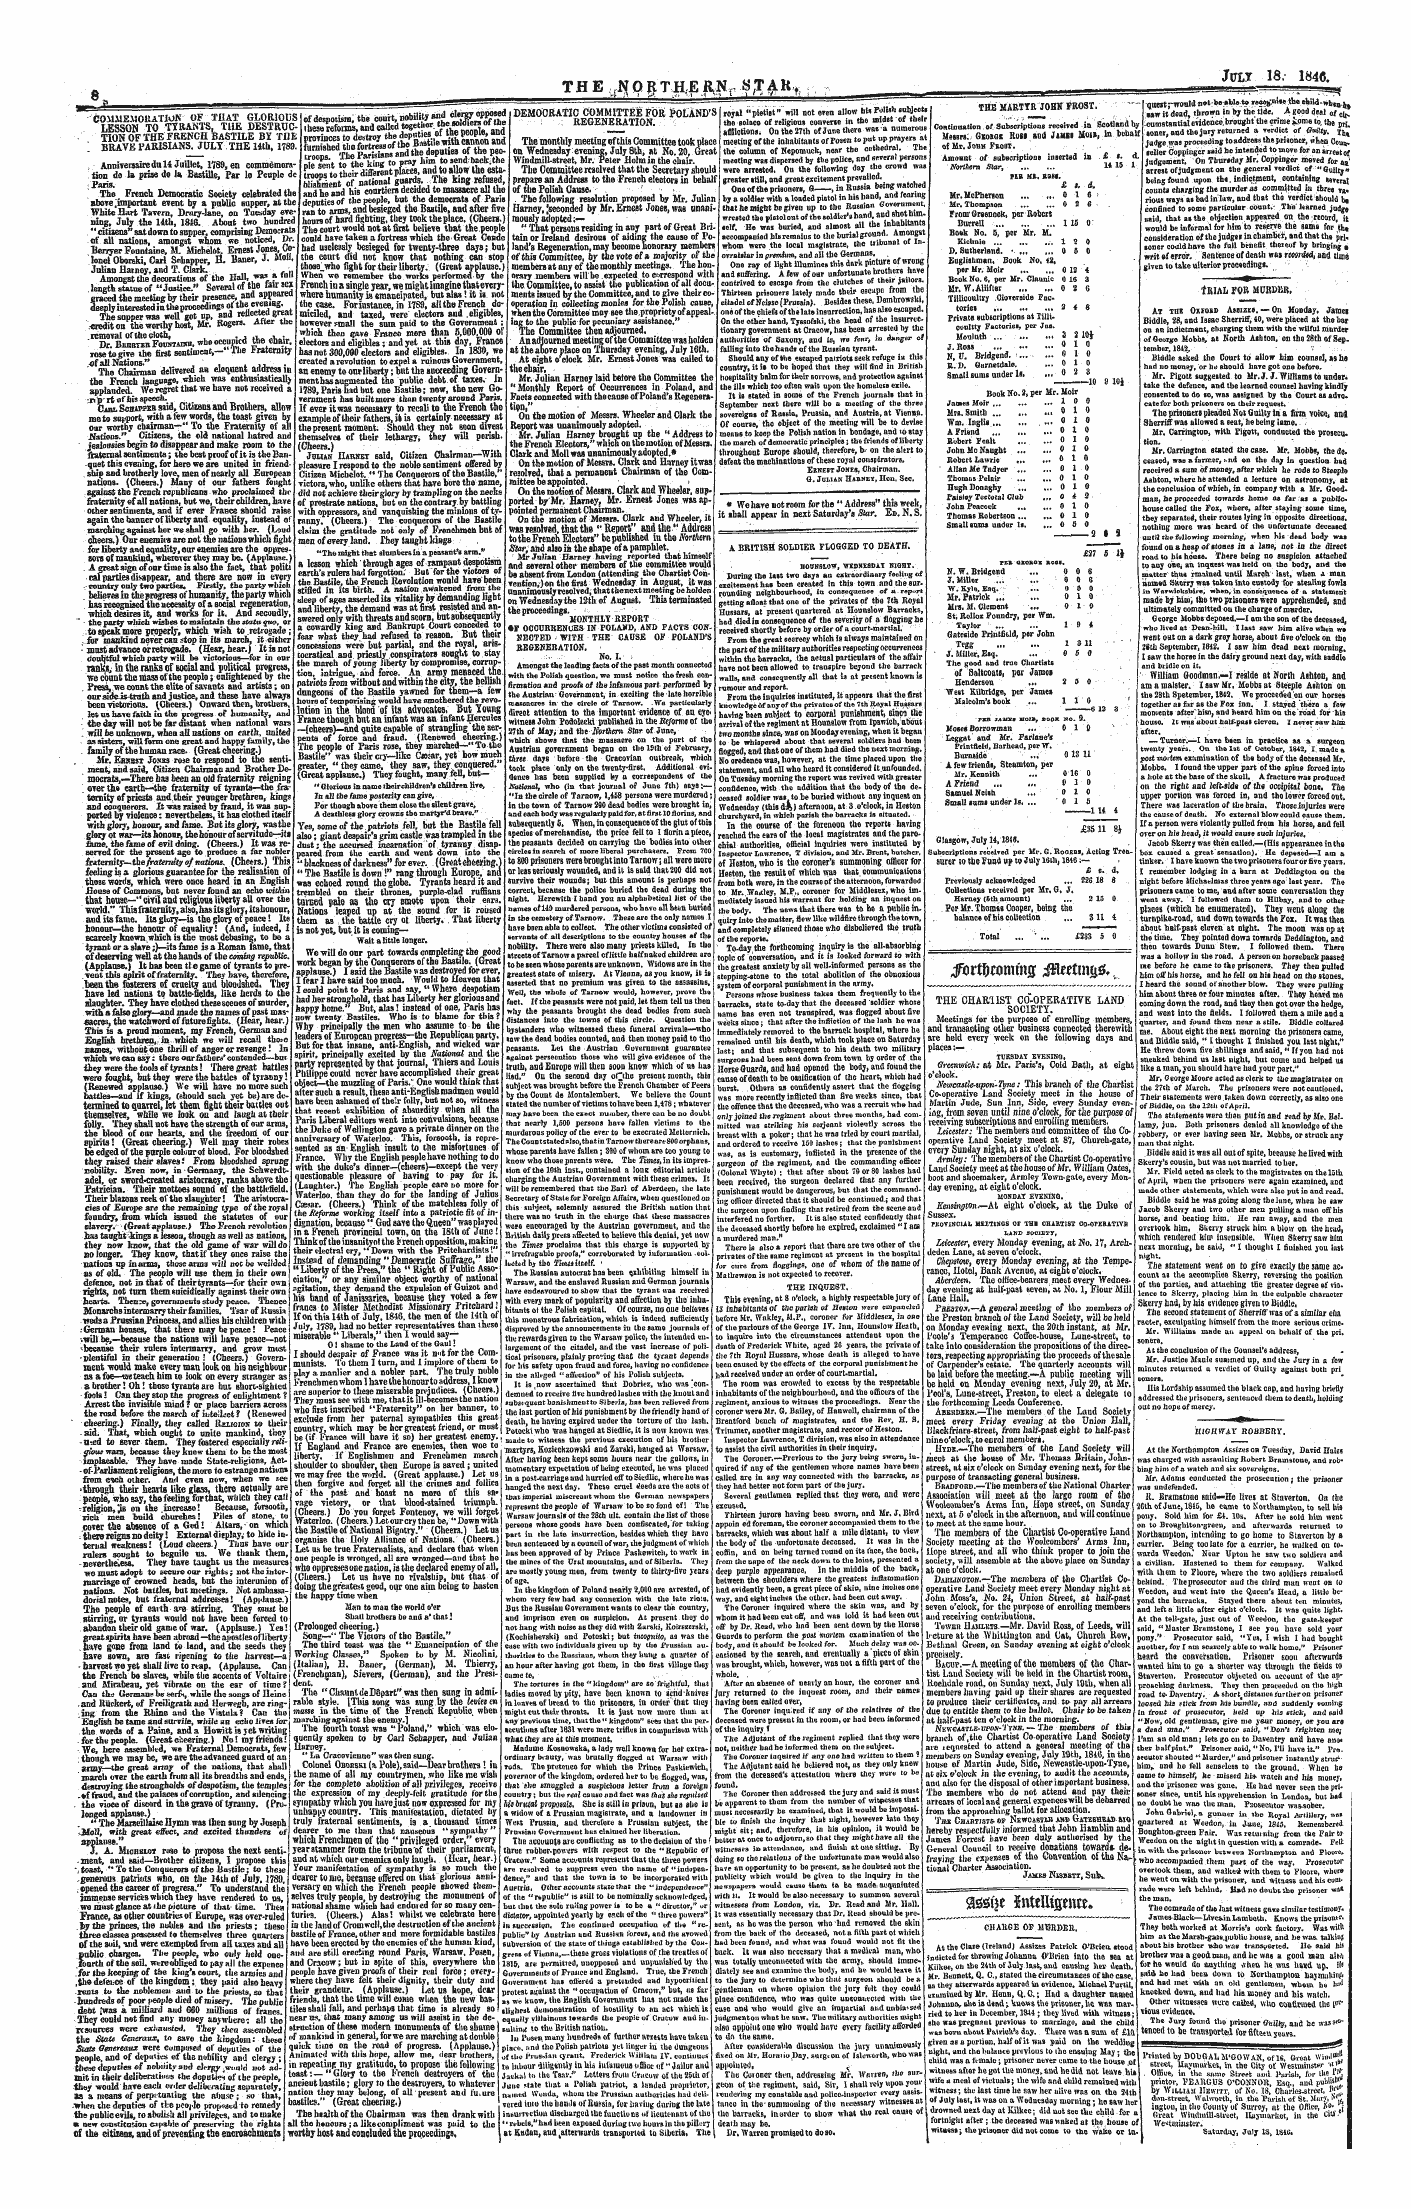 Northern Star (1837-1852): jS F Y, 1st edition - Jtirtifjwnimff I$Imm(J0 V.